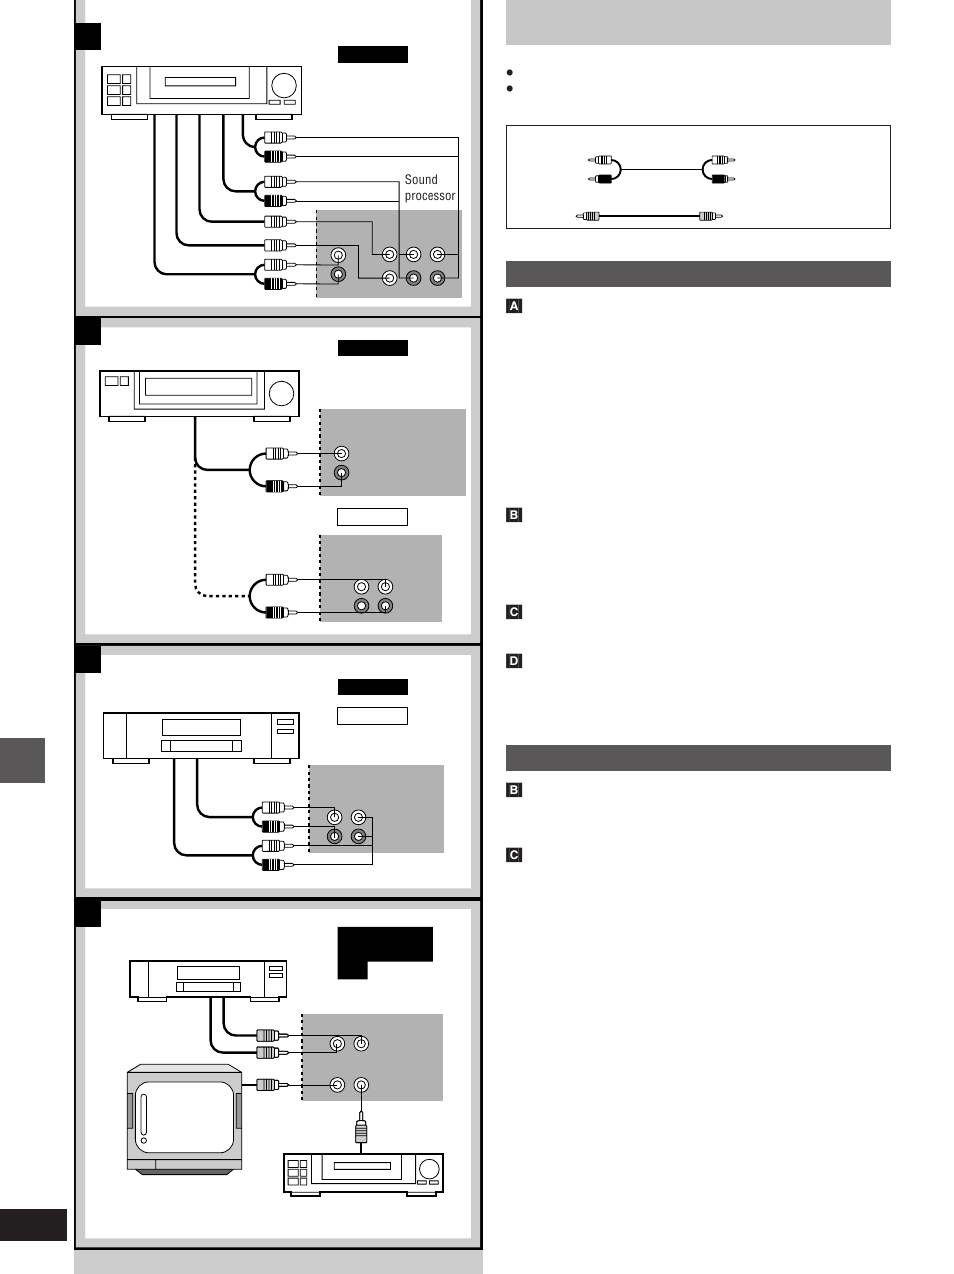 Ba c d, External unit connections, Connections to sc-eh760 | Technics SC- EH560 User Manual | Page 38 / 44 | Original mode